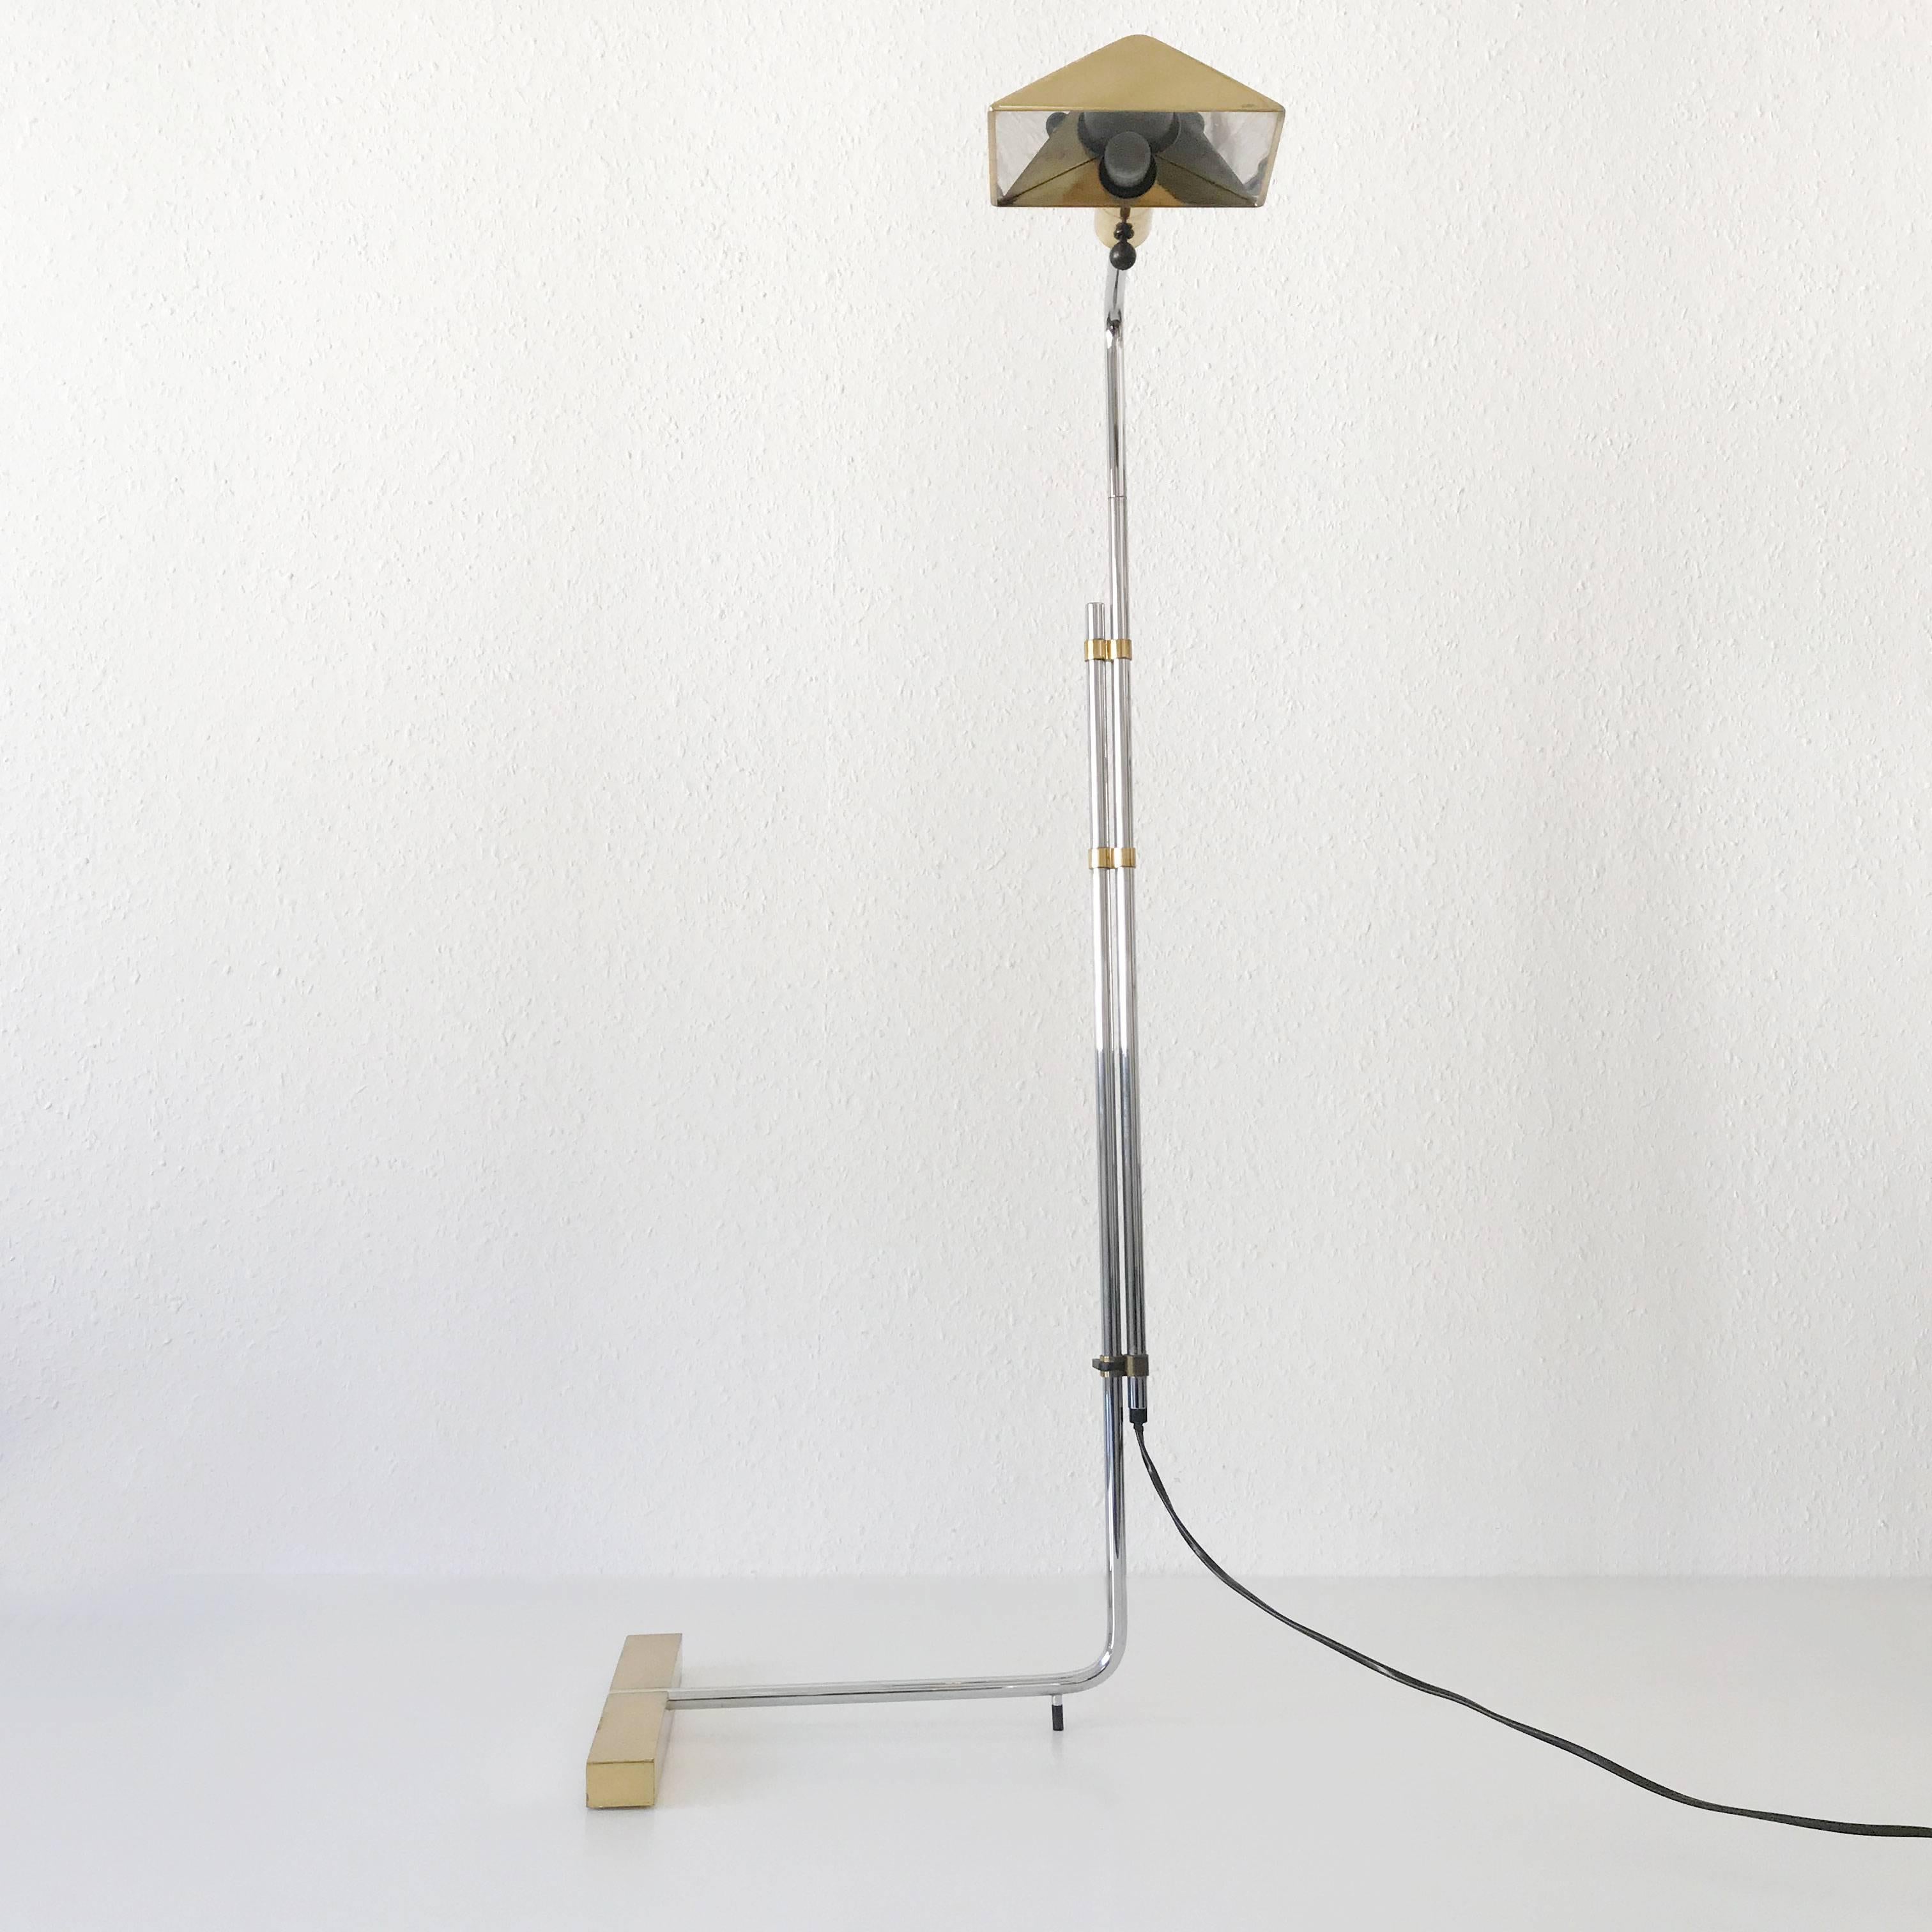 Brass Articulated Floor Lamp by Cedric Hartman for Jack Lenor Larsen, 1966